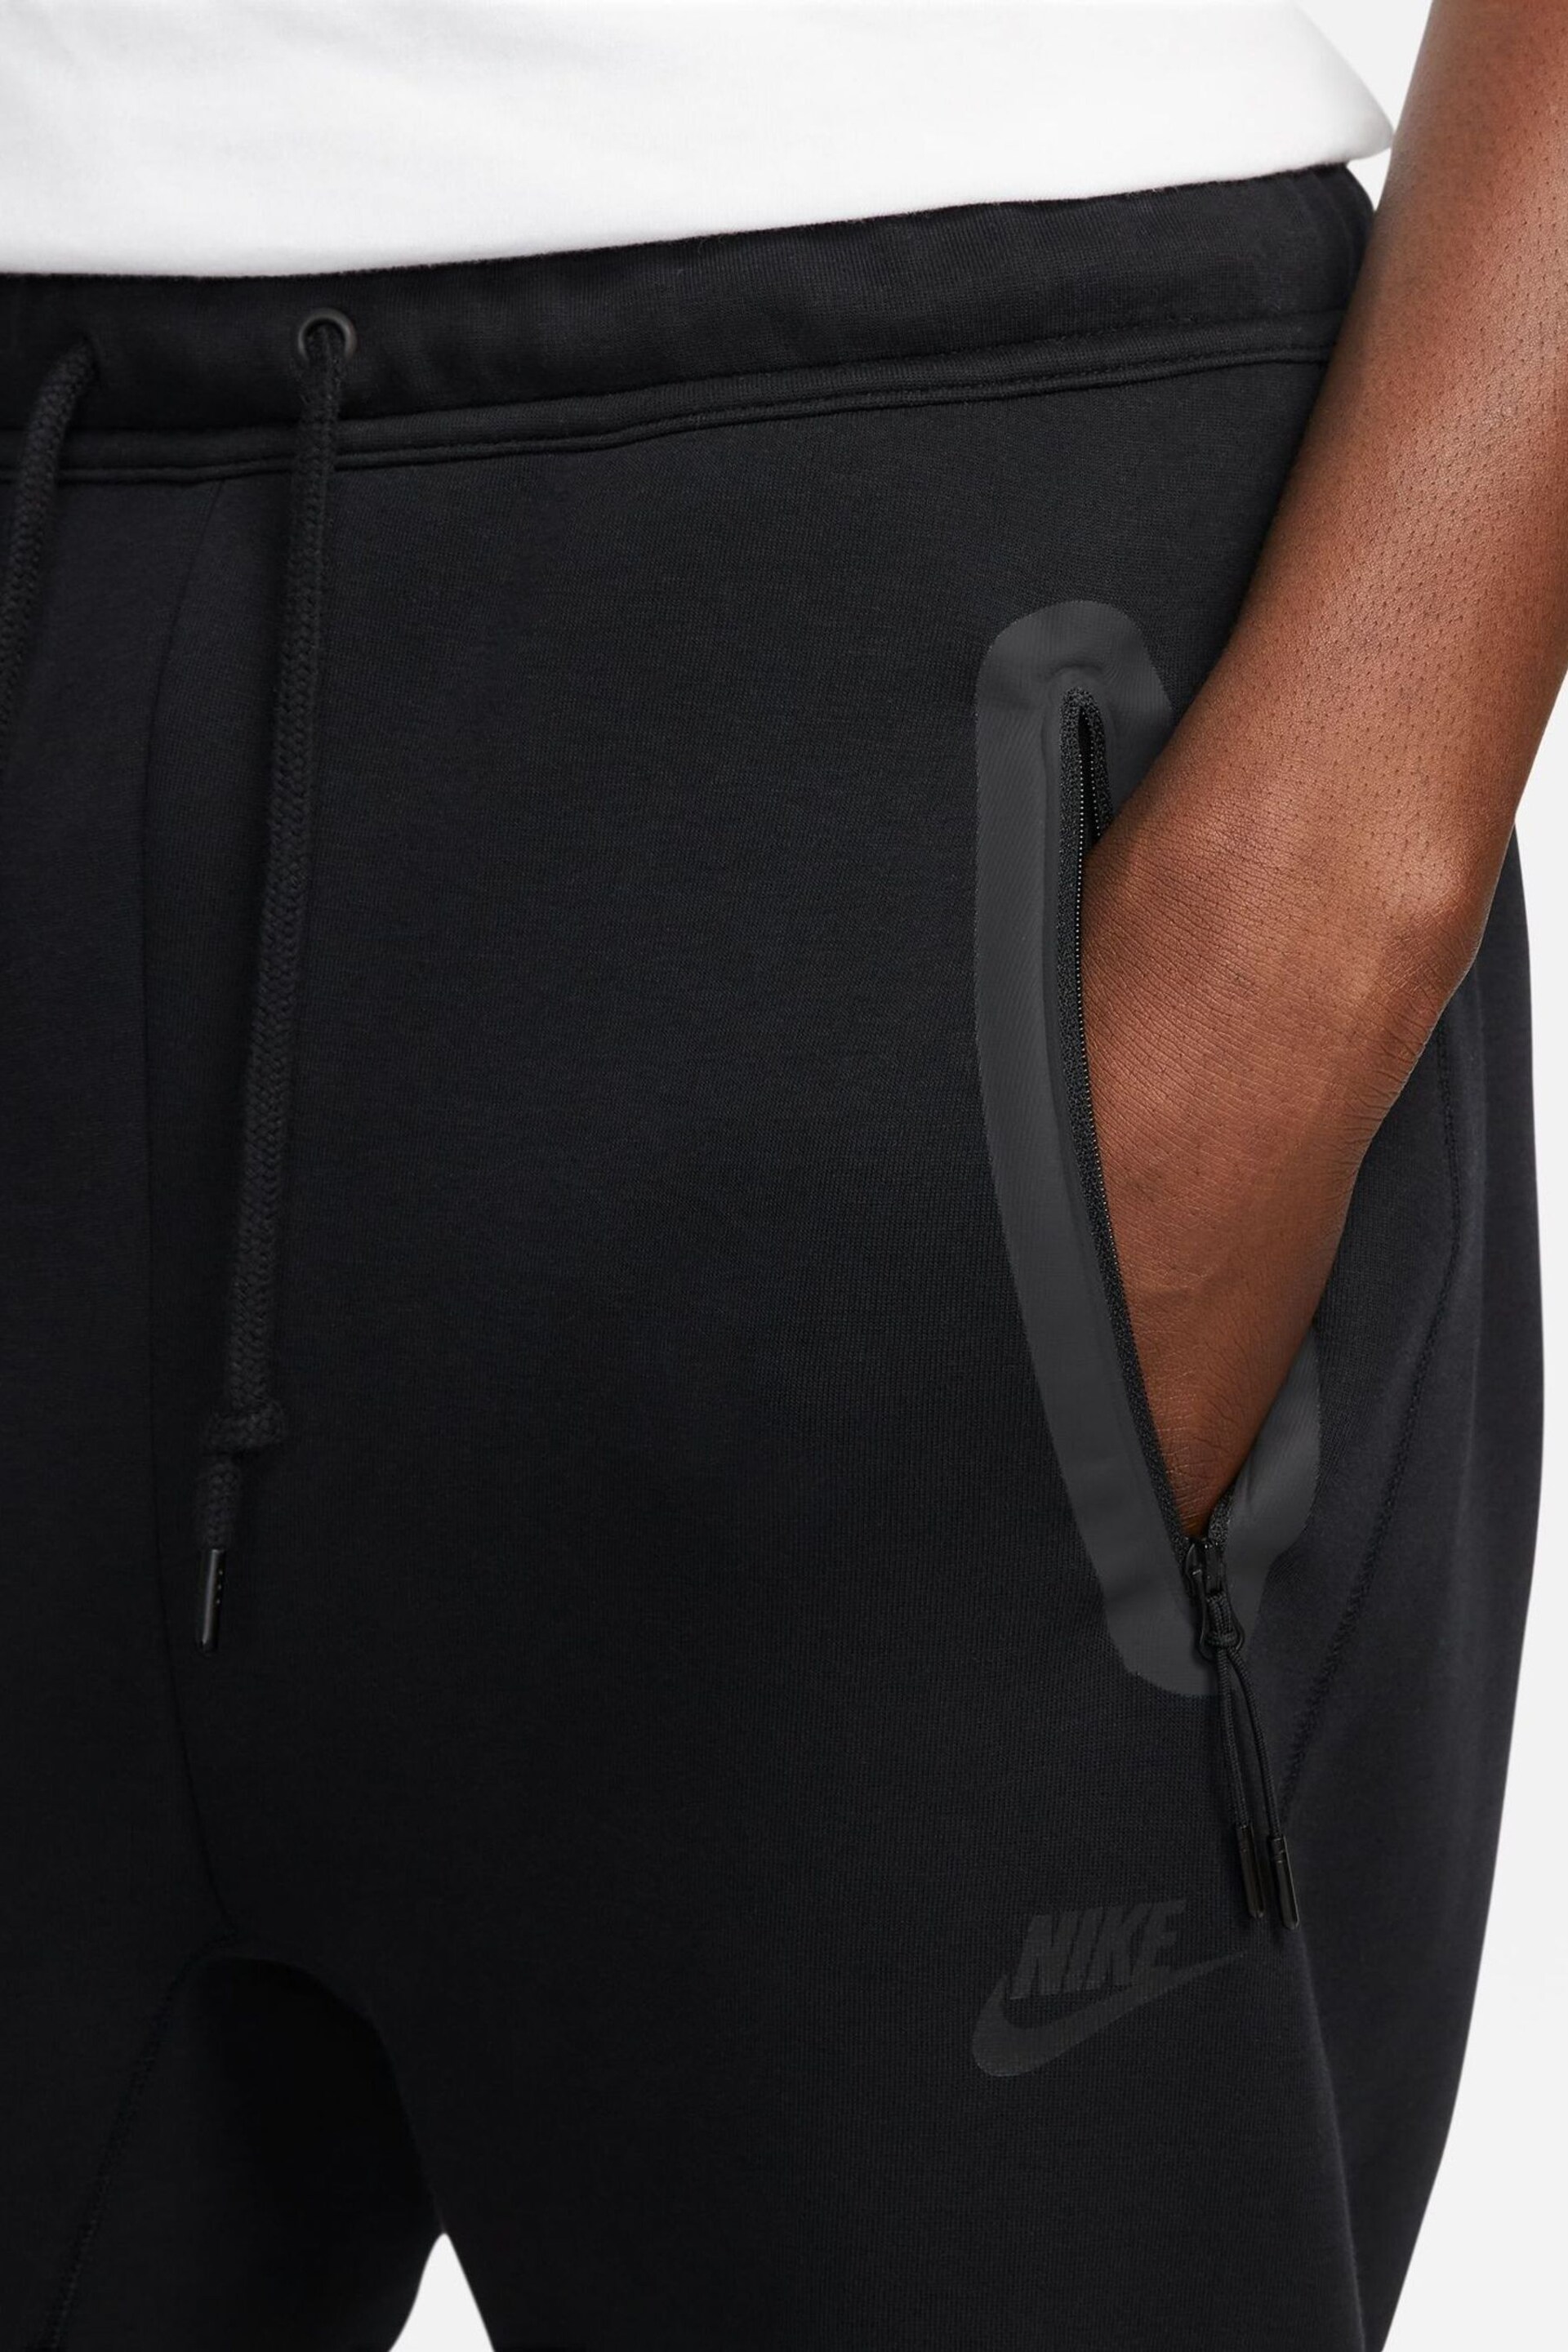 Nike Black Tech Fleece Open Hem Joggers - Image 4 of 14